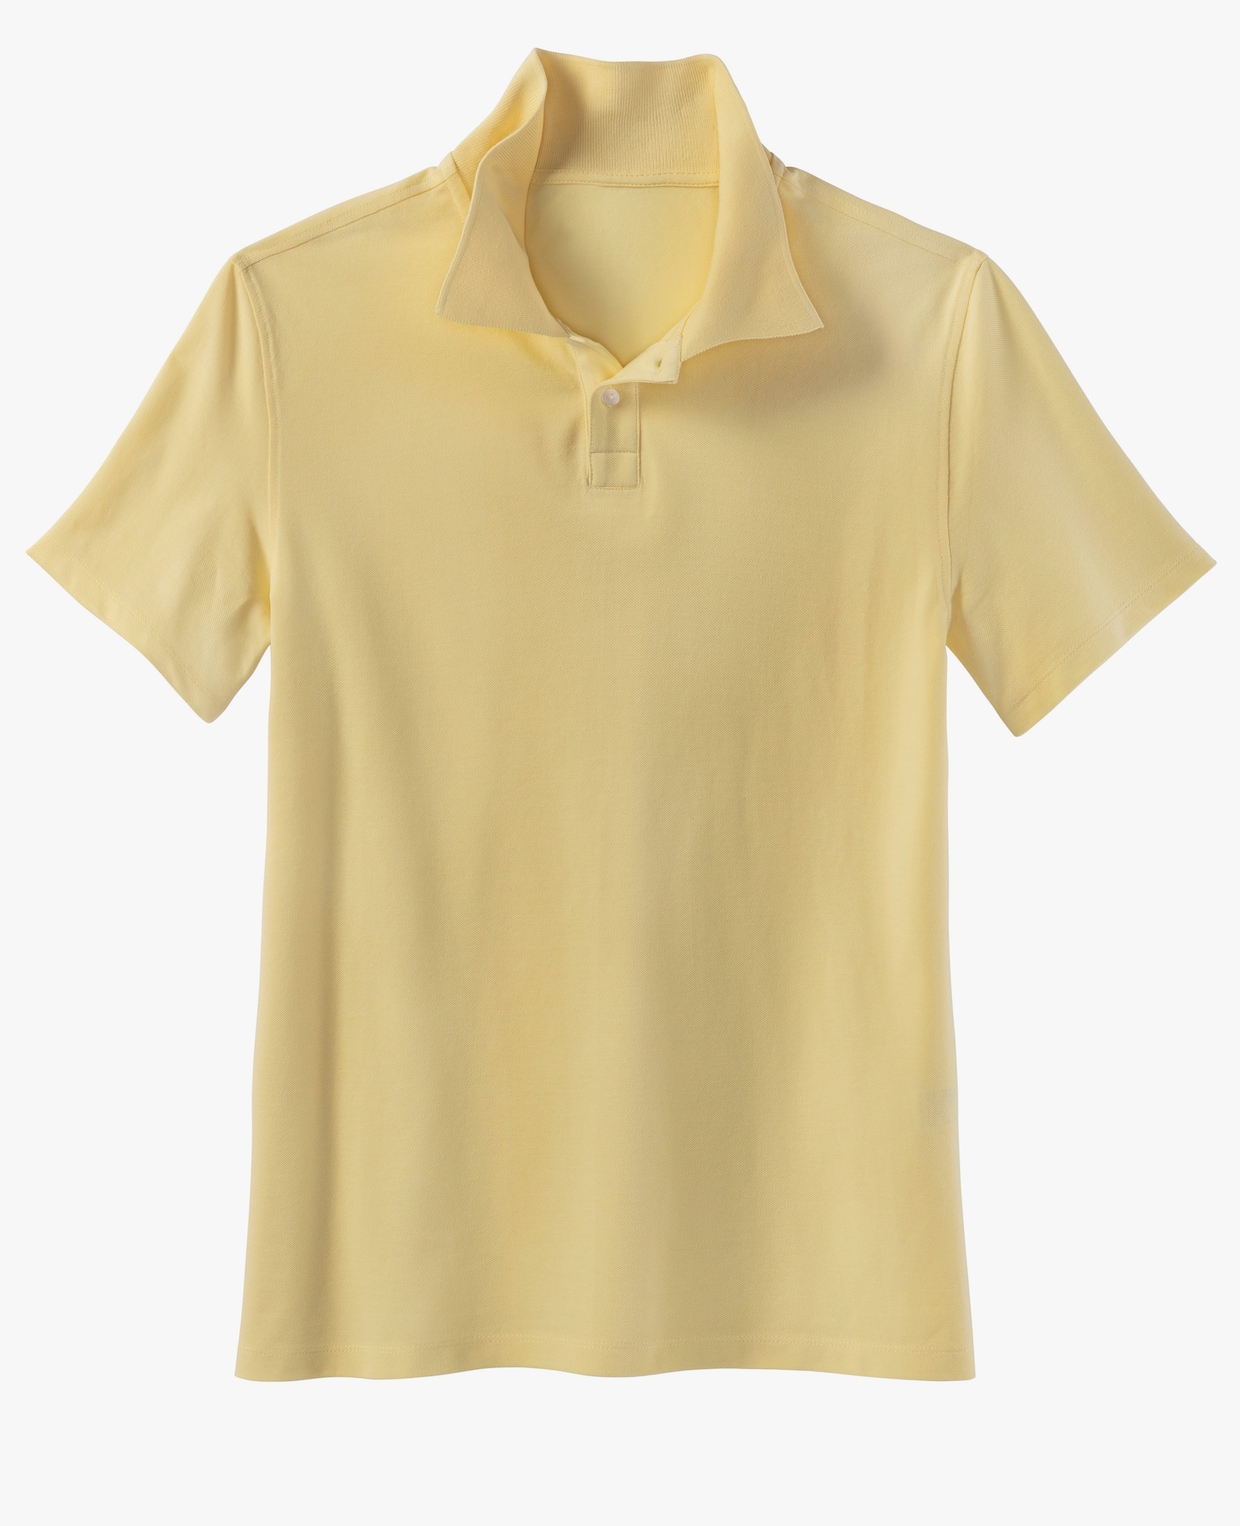 Beachtime Poloshirt - gelb